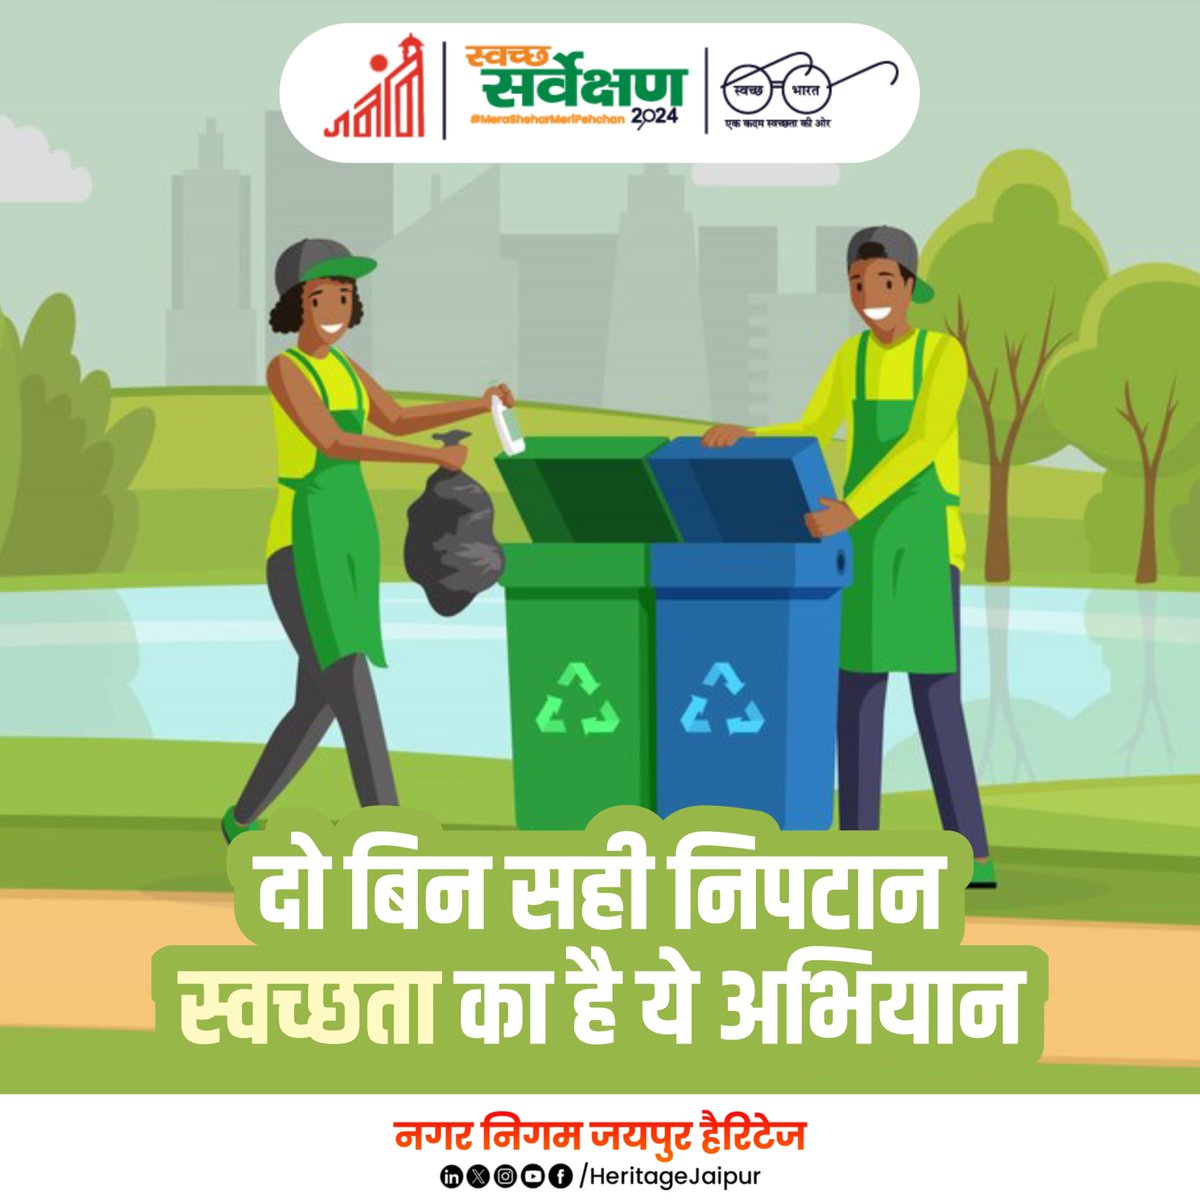 नगर निगम जयपुर हैरिटेज
स्वच्छता के दो रंग,
हमेशा याद रखें, हरा कूड़ेदान गीले कचरे के लिए व नीला कूड़ेदान सूखे कचरे के लिए ही उपयोग करें।
जागो जयपुर, जगमग जयपुर

#Rajasthan #SwachhBharat #SwachhSurveksh2024 #GarbageFreeIndia #jagojaipurjagmagjaipur #gogreen #Garbagefree